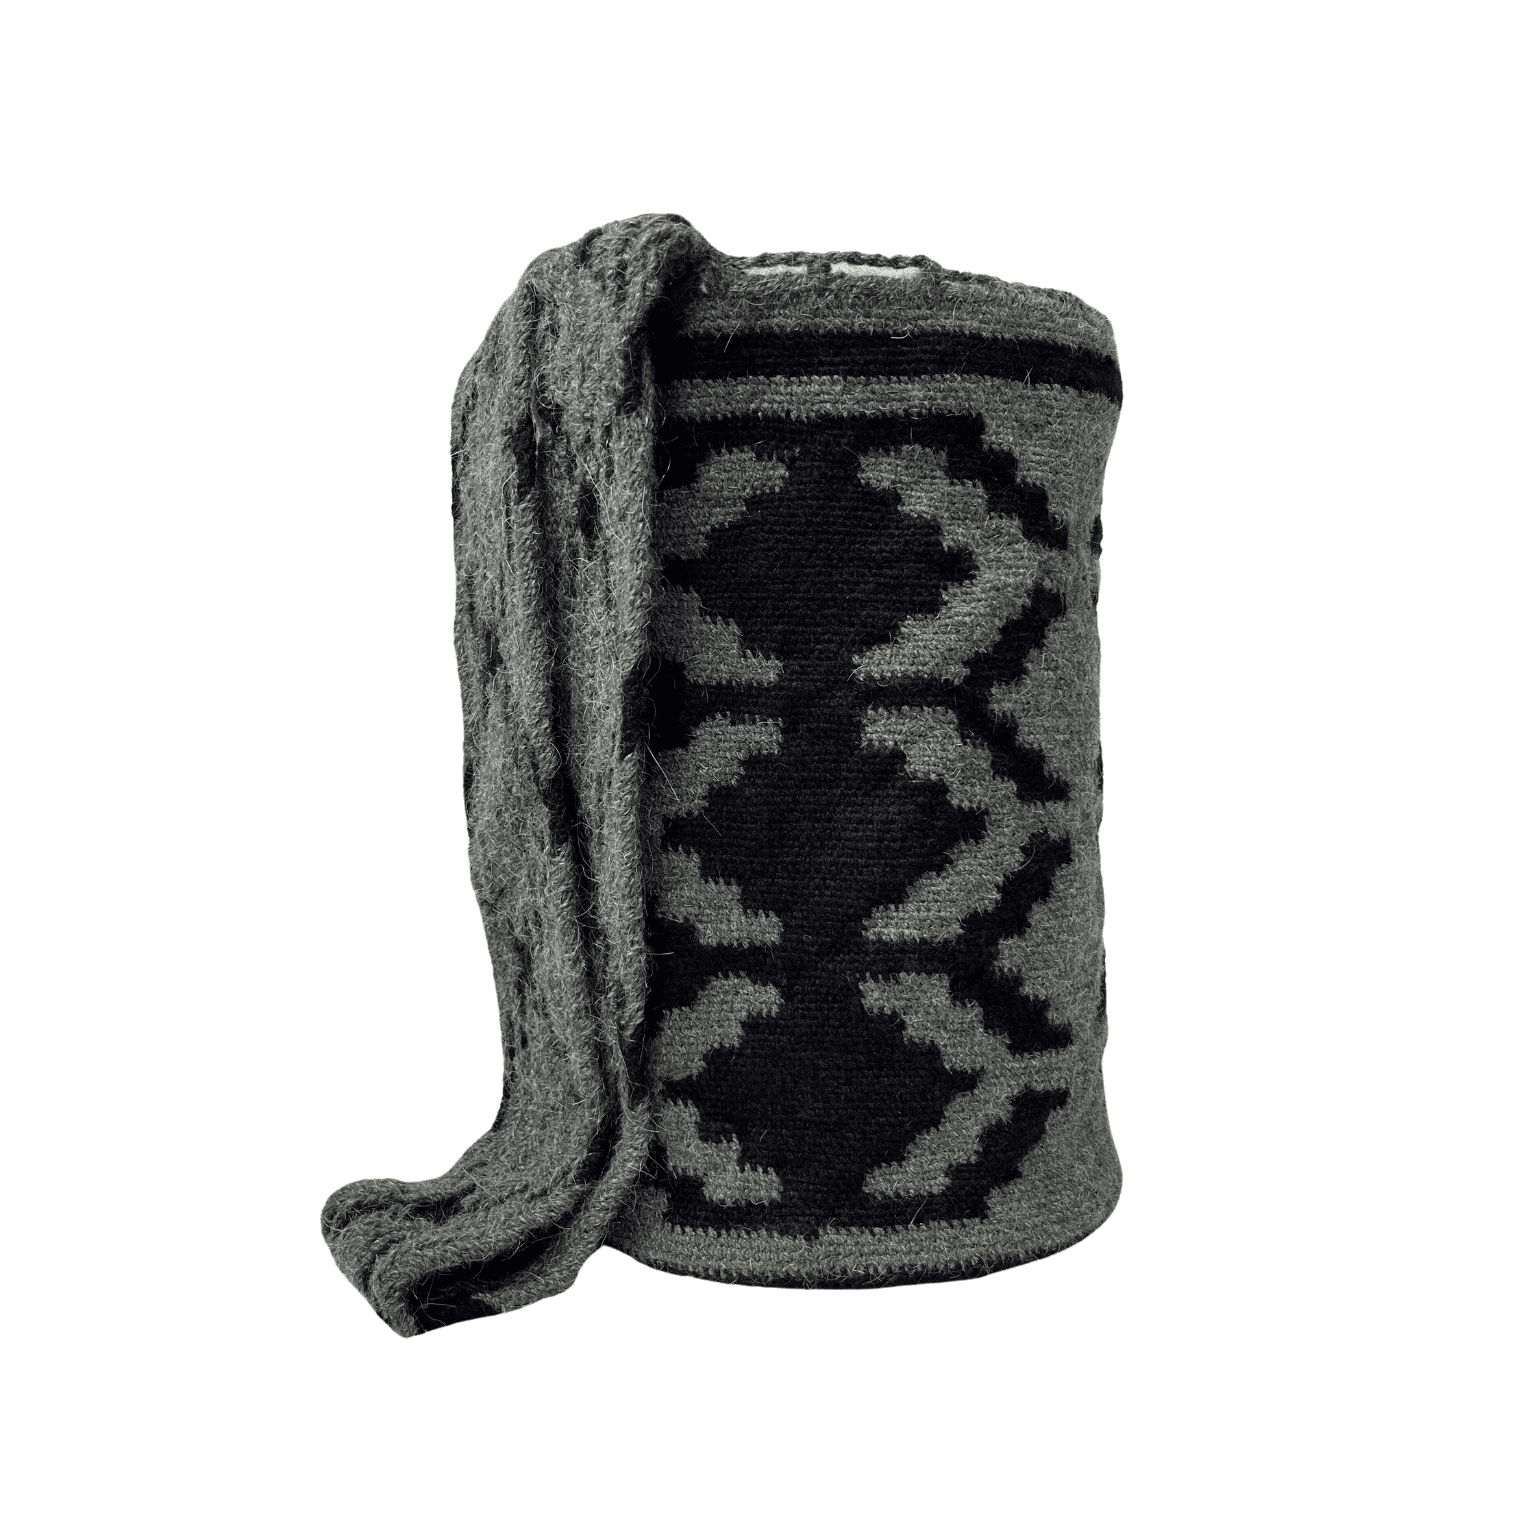 Mochila arhuaca original colores negro y gris tamaño grande para hombre